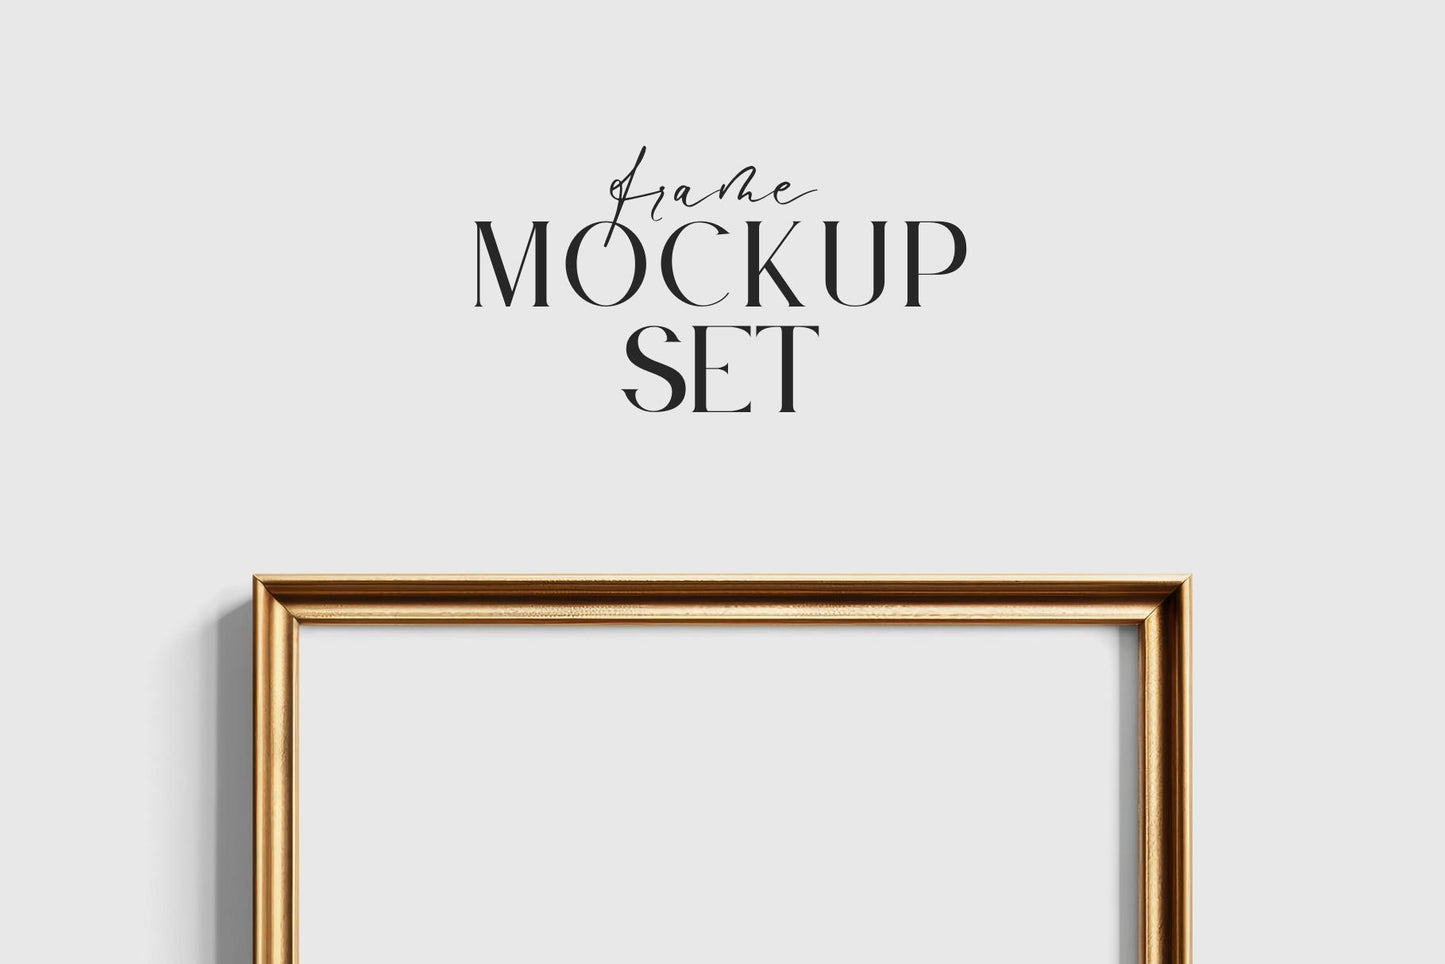 Gallery Wall Mockup | Metallic Frame Mockup Set of 5 Vertical Frames 5:7, 3:4 | Elegant Black and Gold Frame Mockup Set | PSD Template + Transparent PNG Files